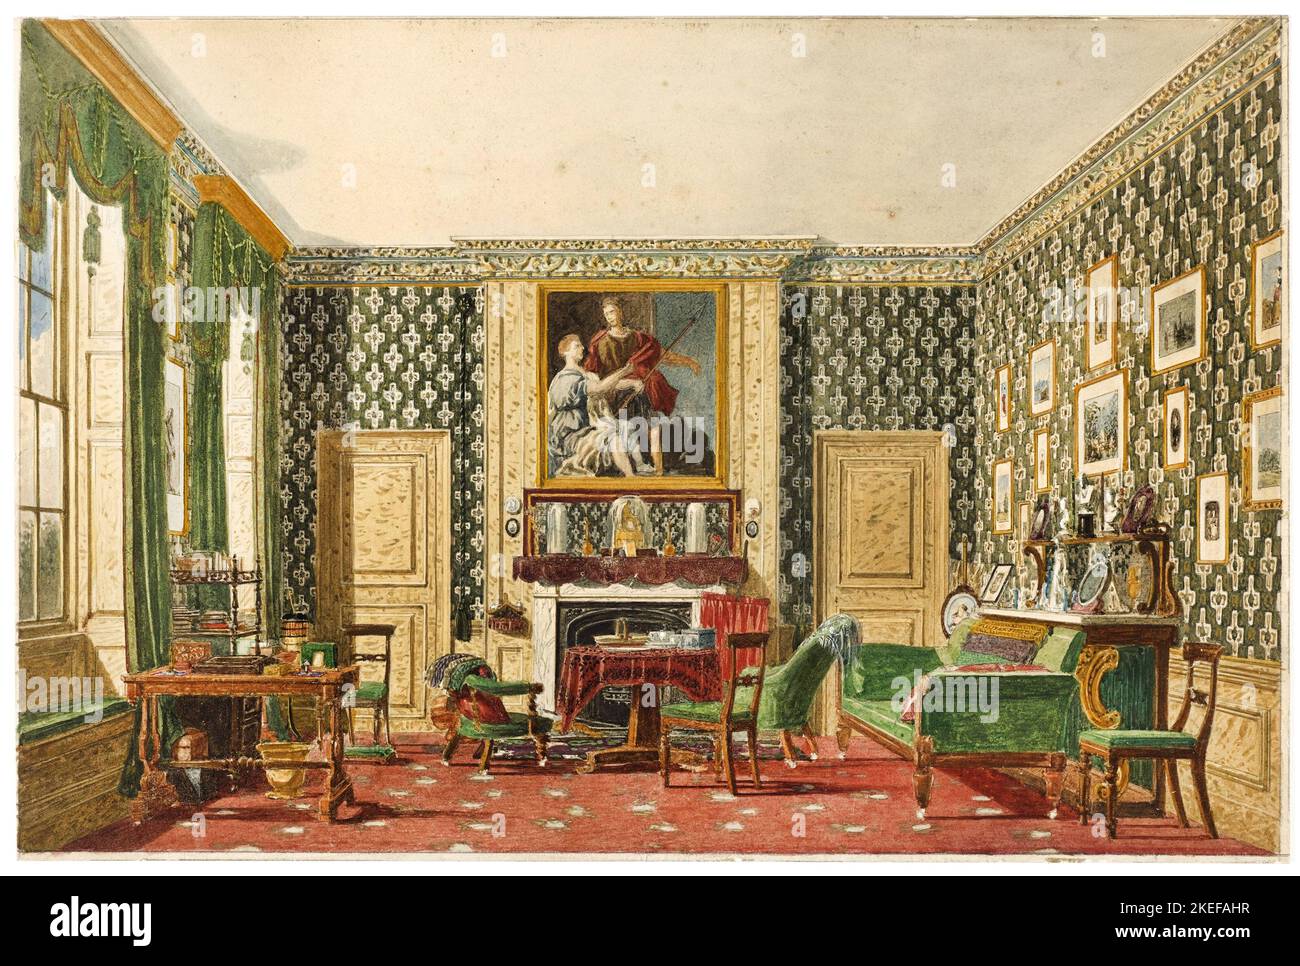 Mary Ellen Best, an Interior, ca. 1837-1840, Pinsel und Aquarell, Graphit auf cremefarbenem Wove-Papier, Cooper Hewitt, Smithsonian Design Museum, USA. Stockfoto